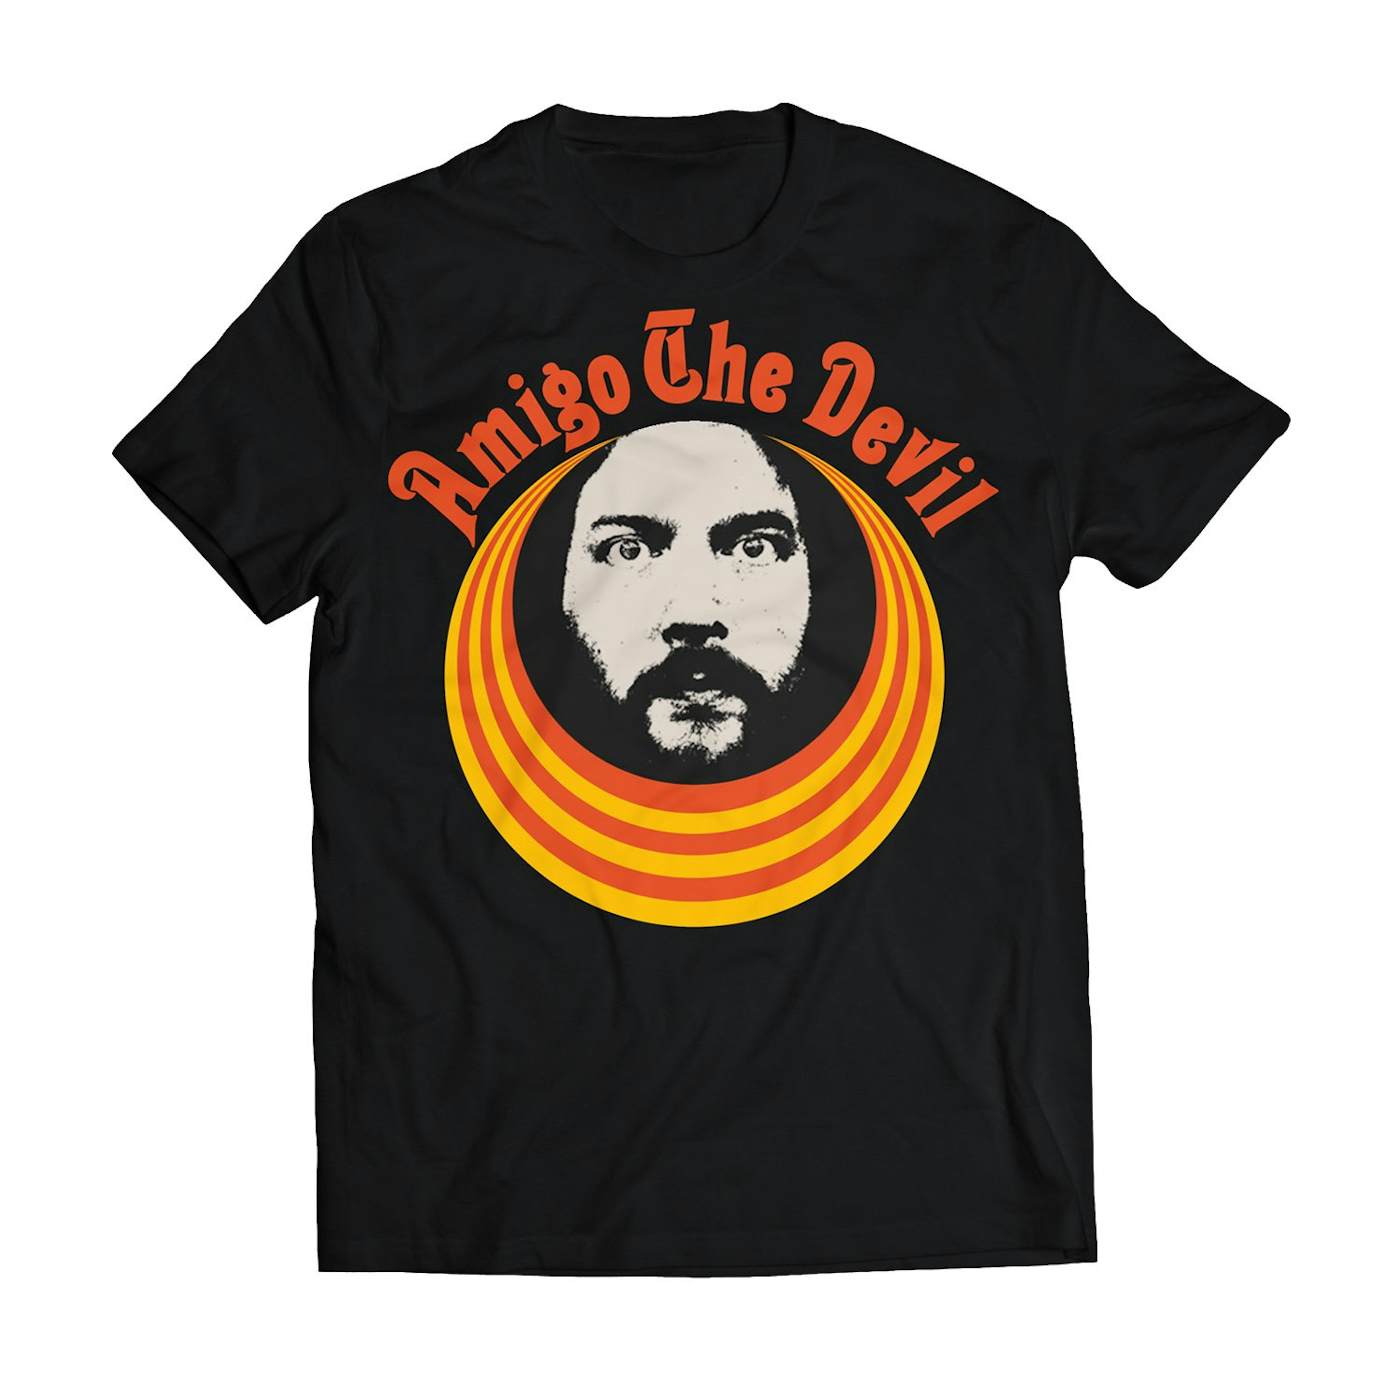 Amigo The Devil "Leader" T-Shirt